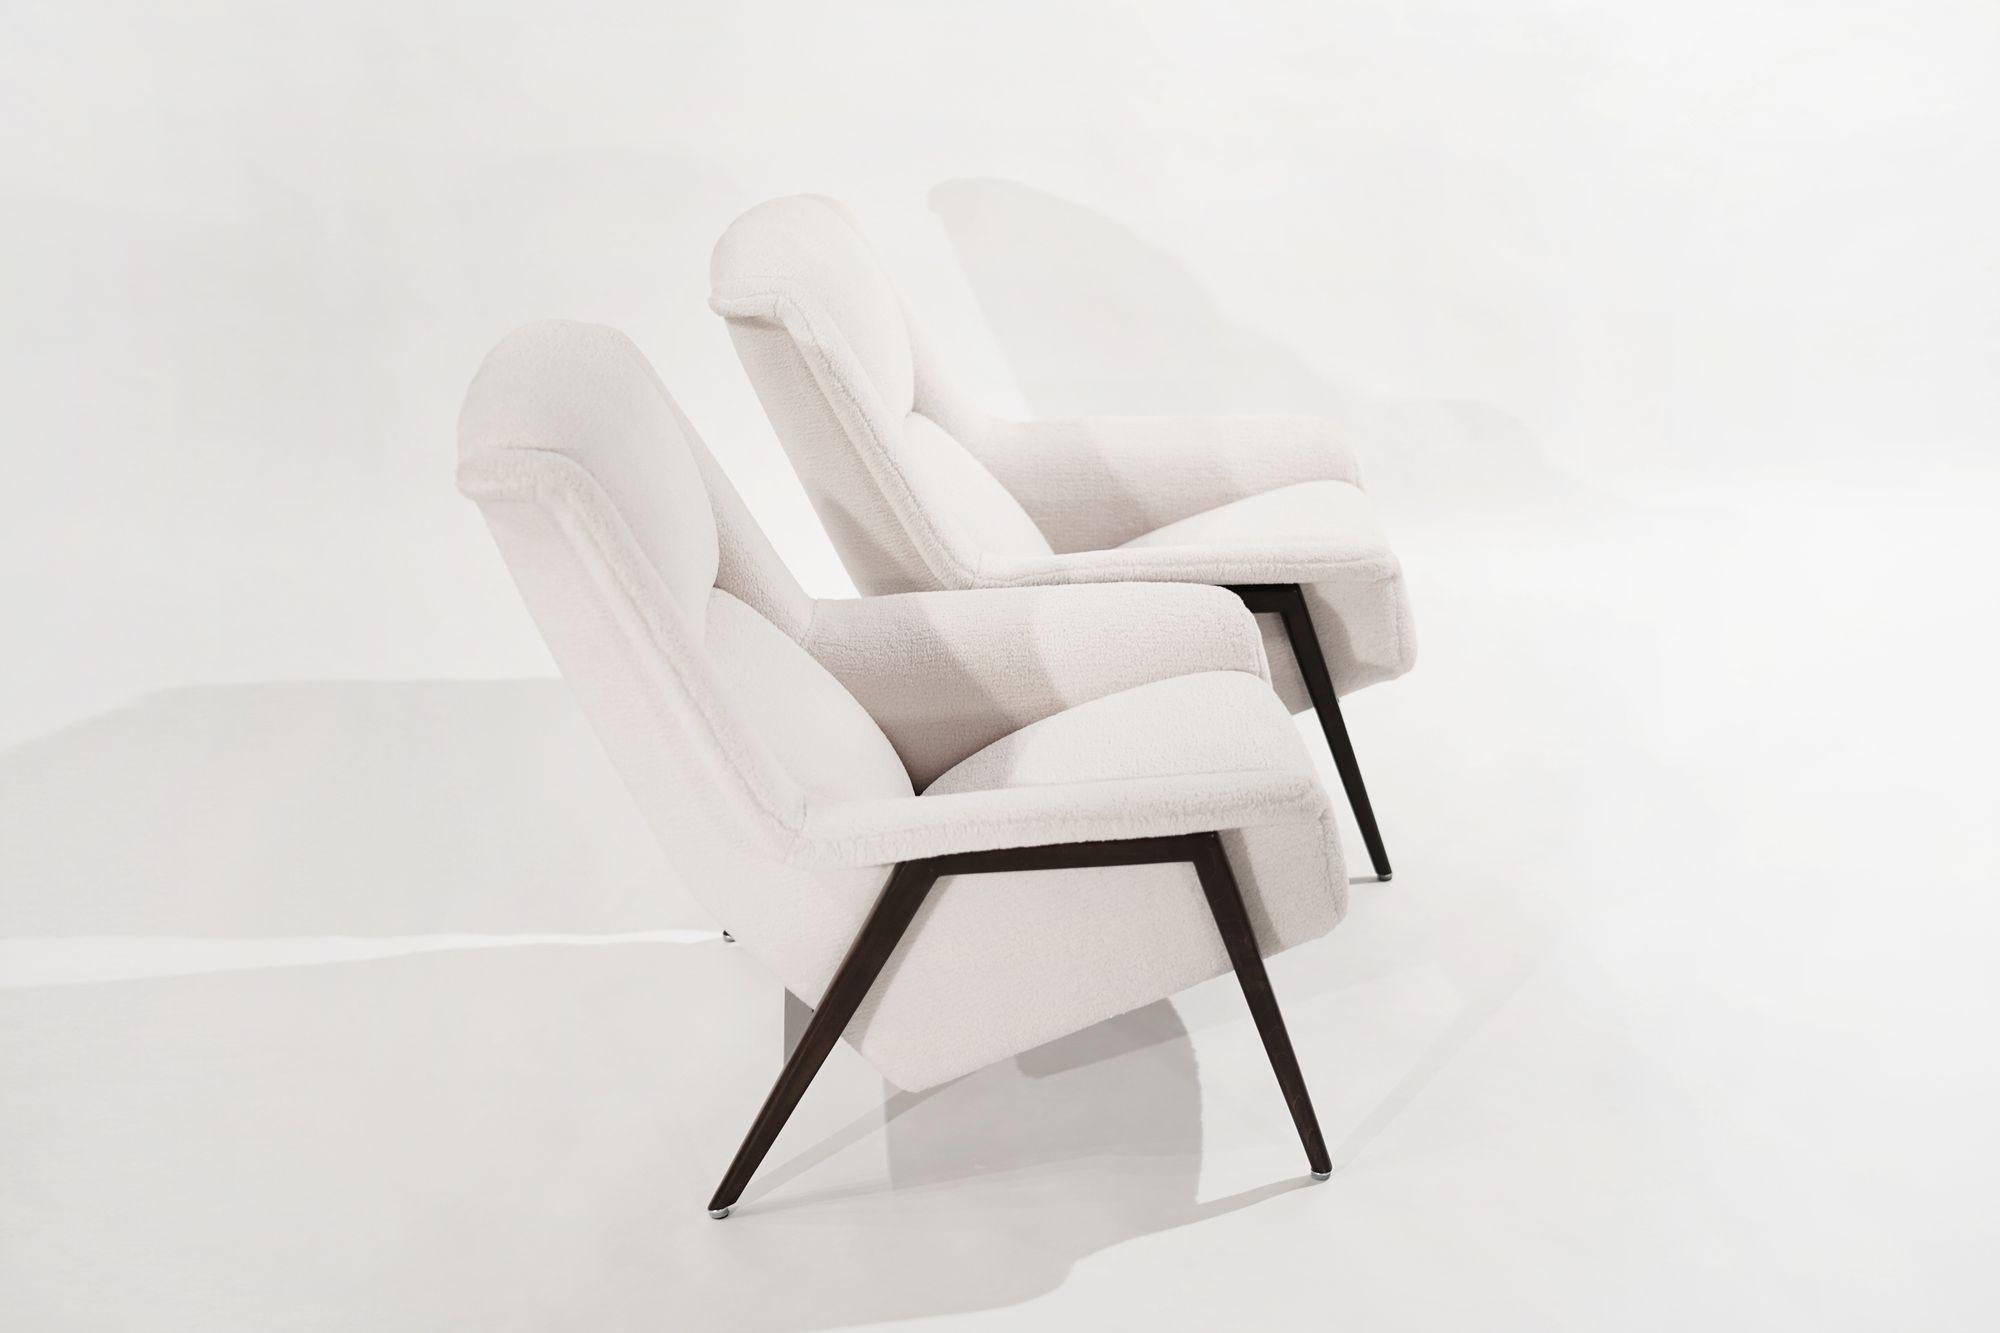 Teak Scandinavian-Modern Lounge Chairs by DUX, Sweden 1960s